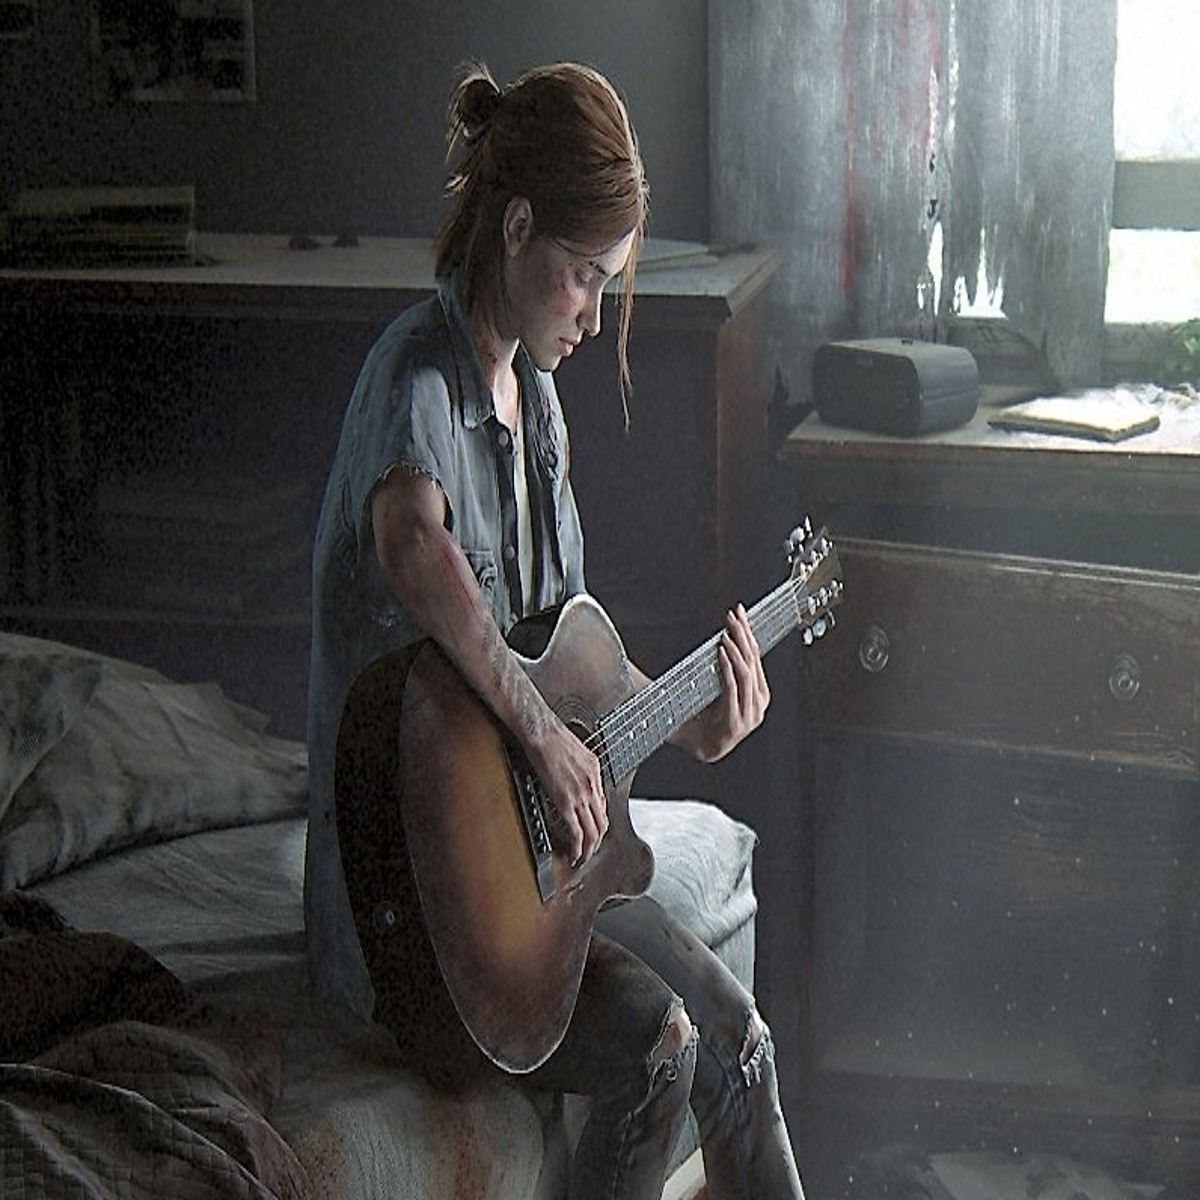 Em seu primeiro aniversário, The Last of Us Part II ganha estátua